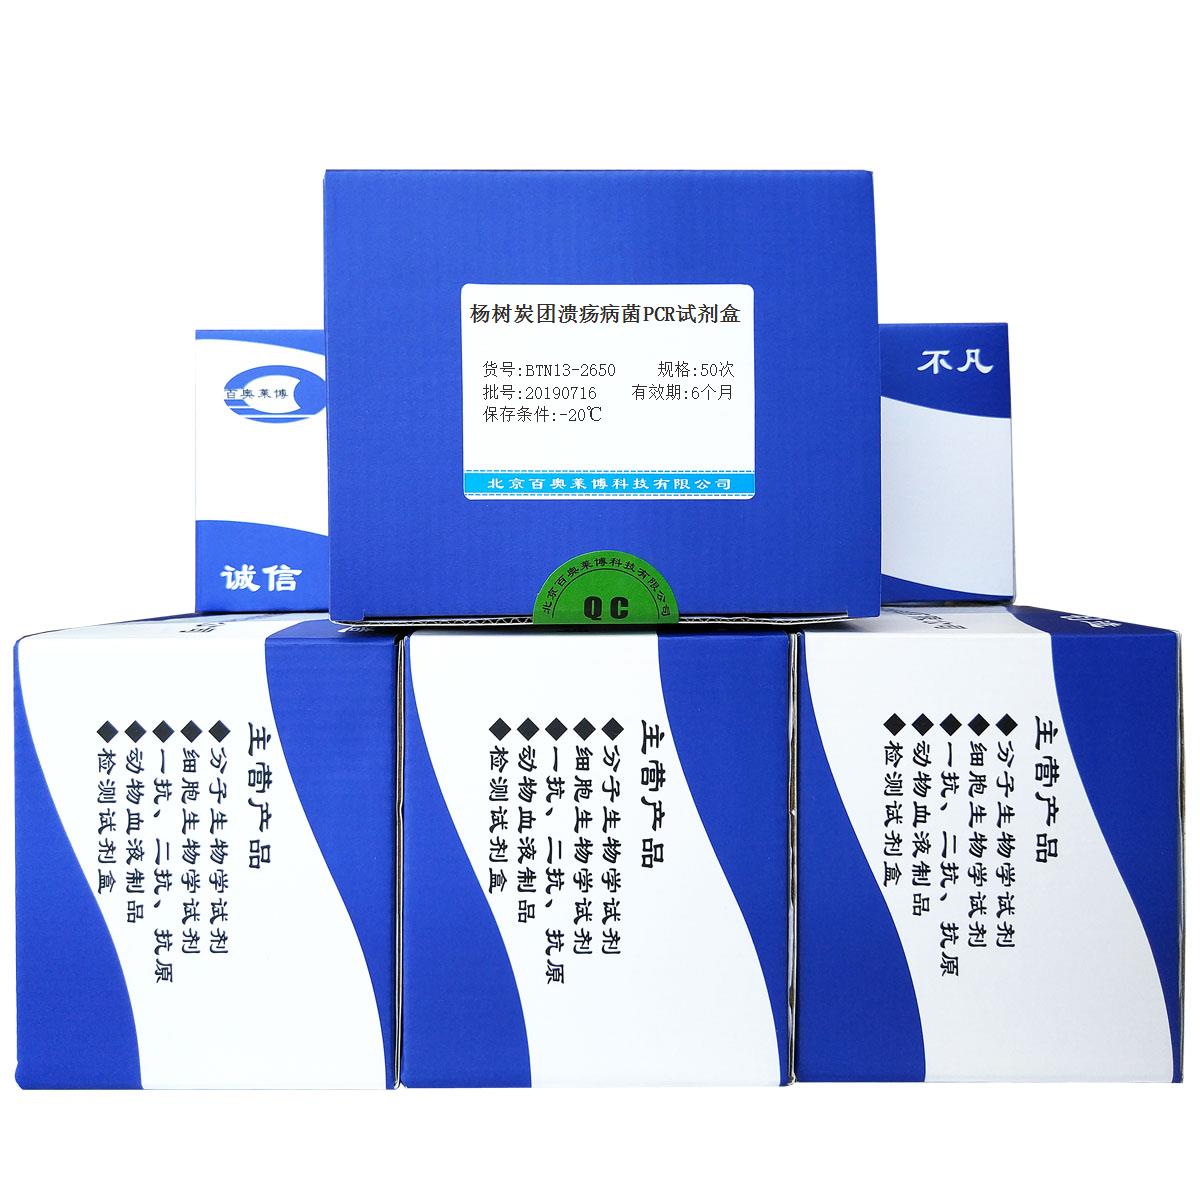 杨树炭团溃疡病菌PCR试剂盒北京价格